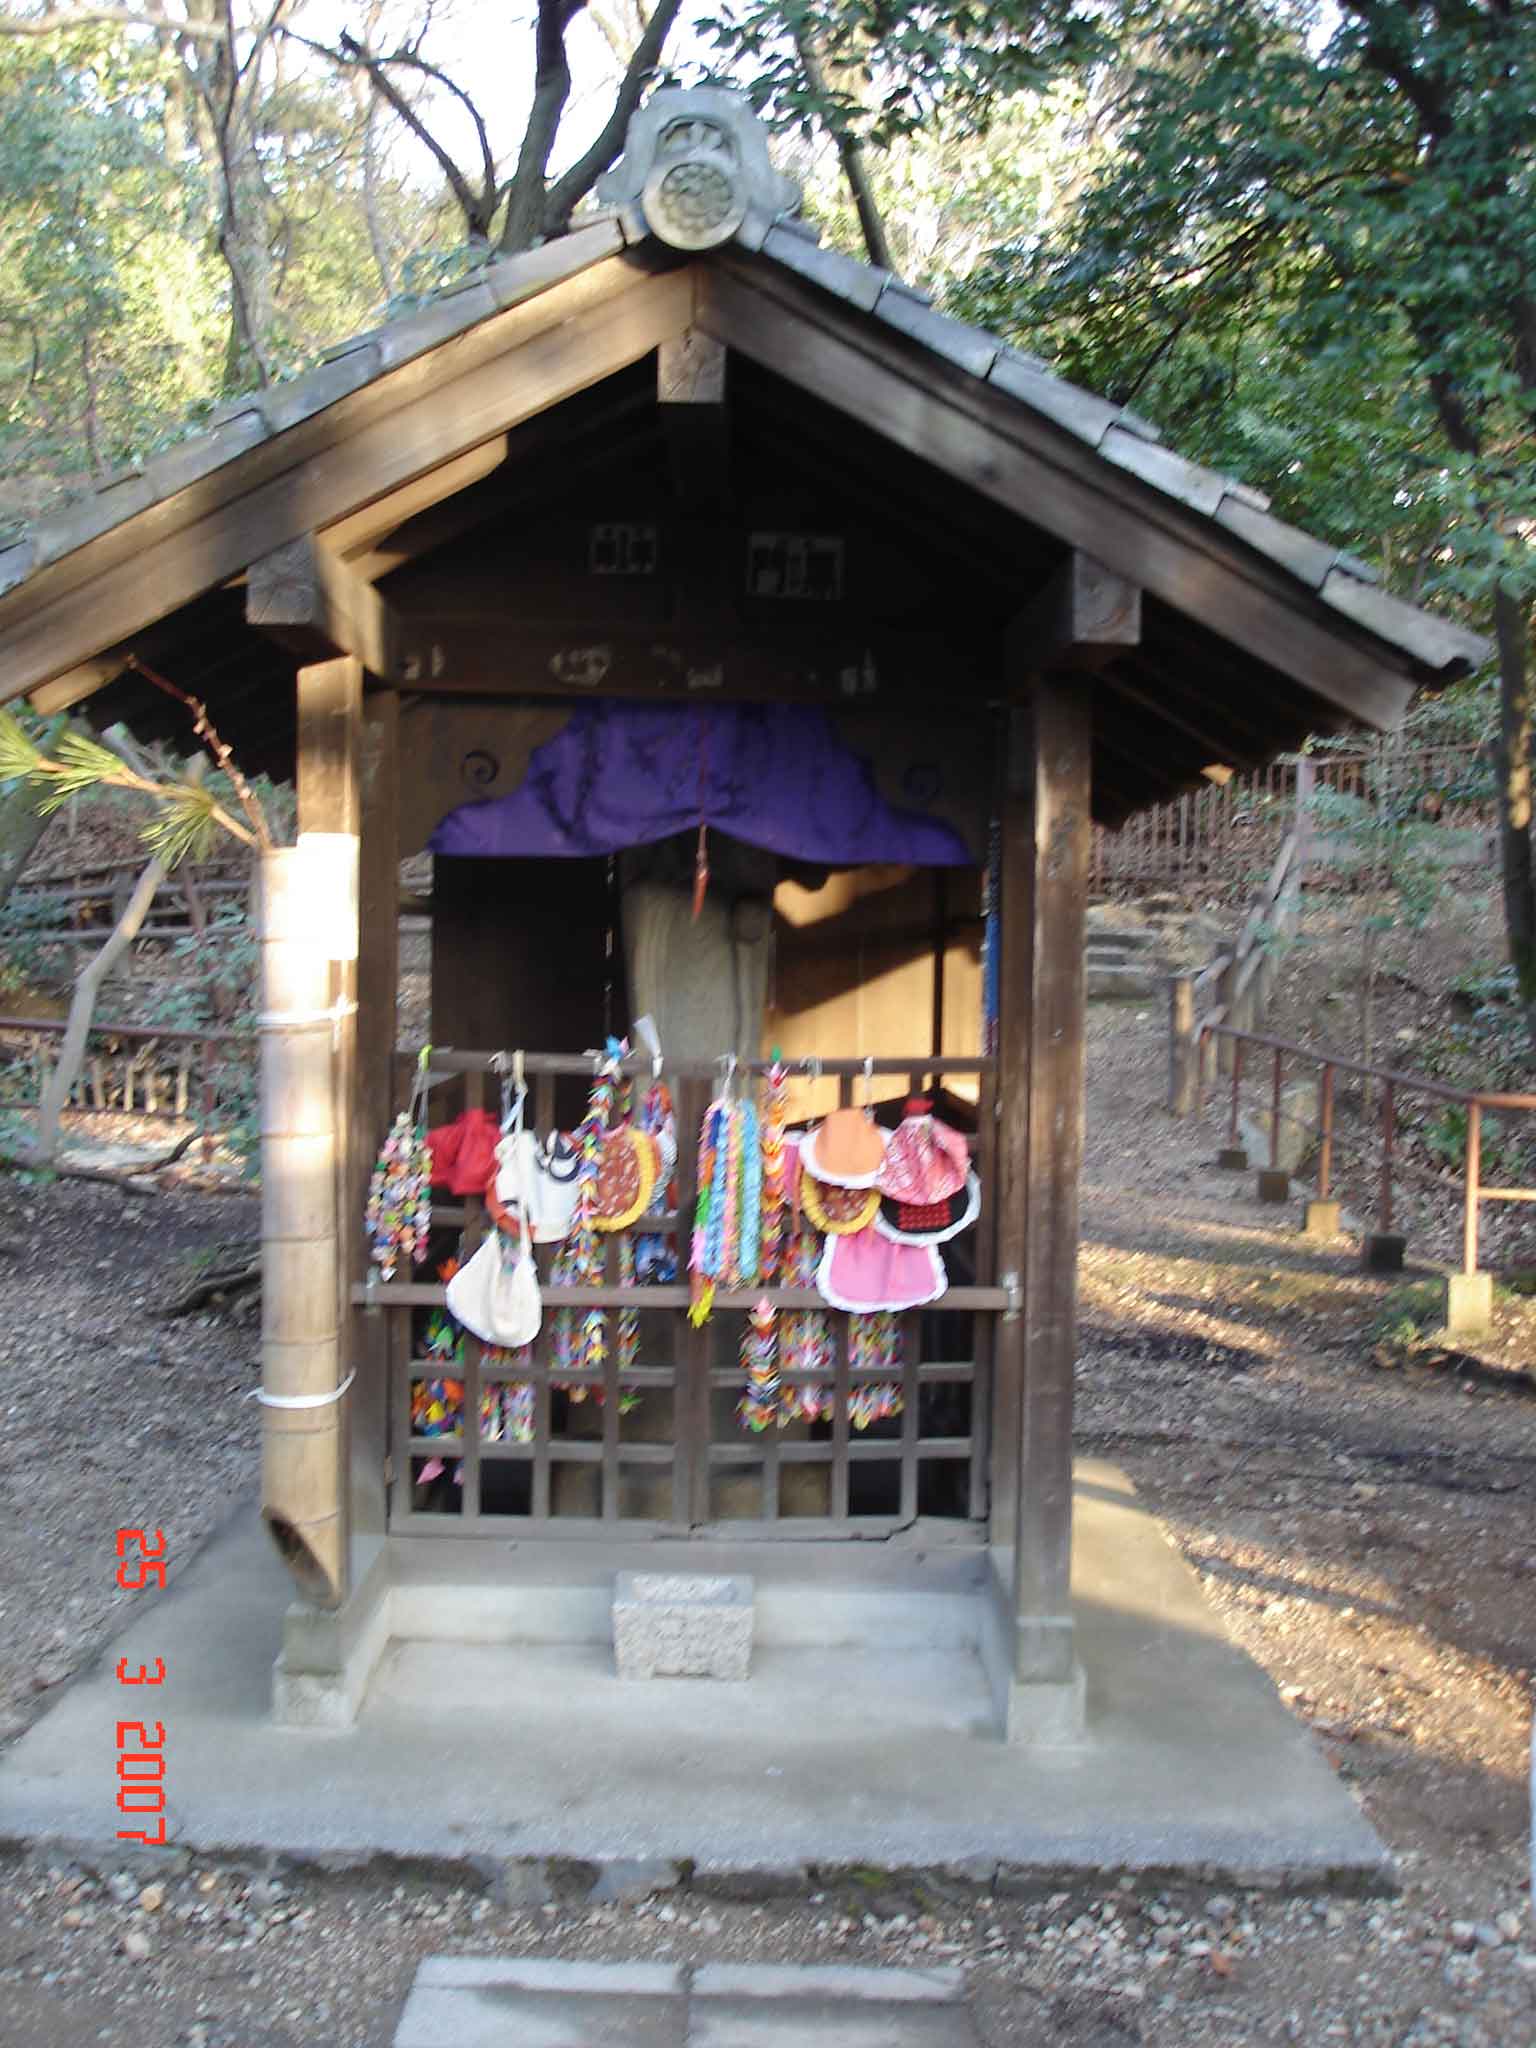 Koshoji-Wooden-shrines